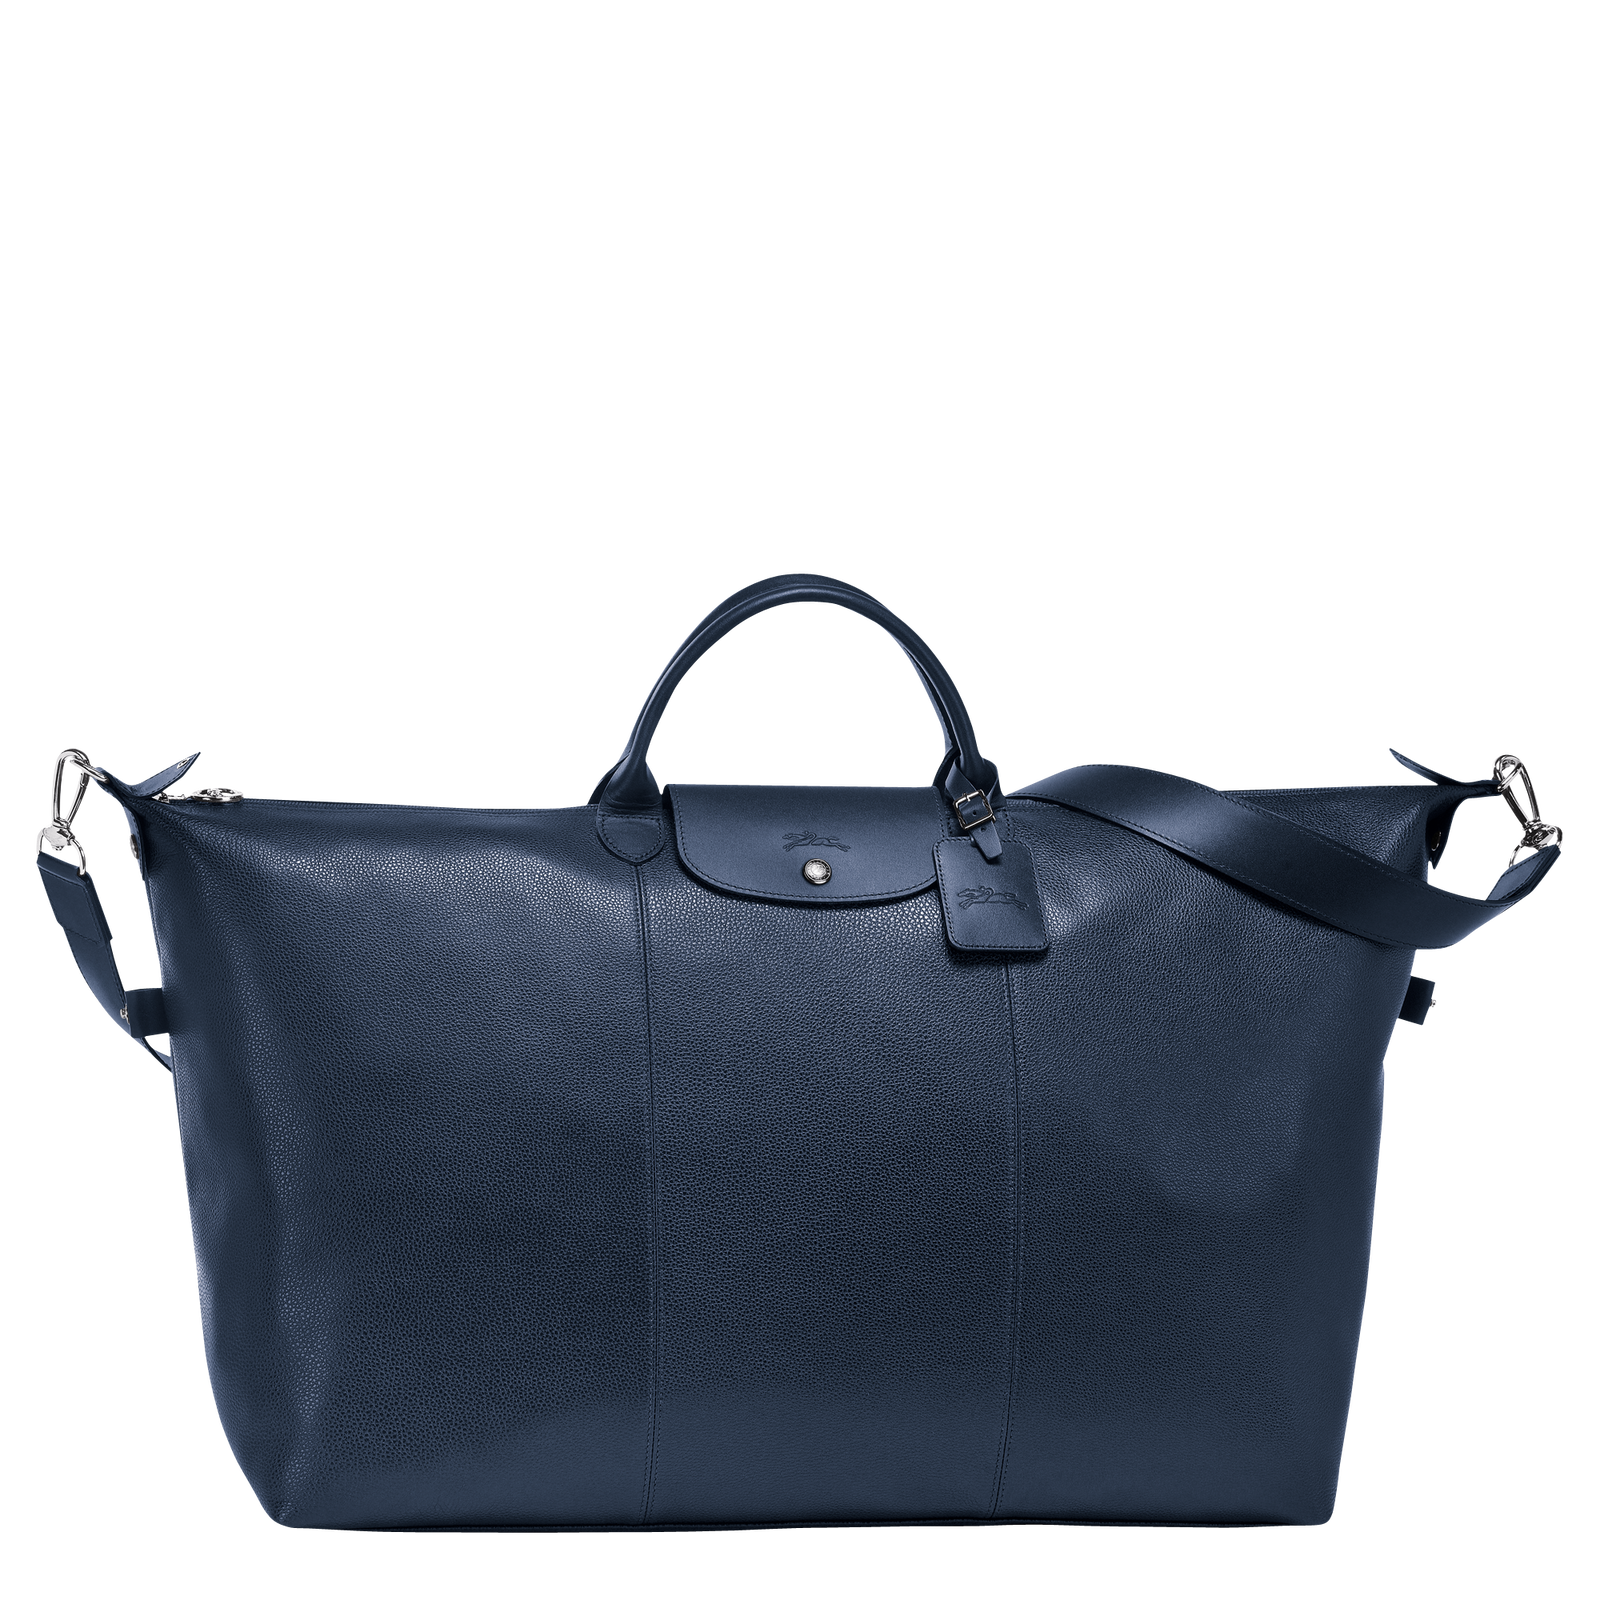 Le Foulonné 系列 旅行袋 S, 海軍藍色